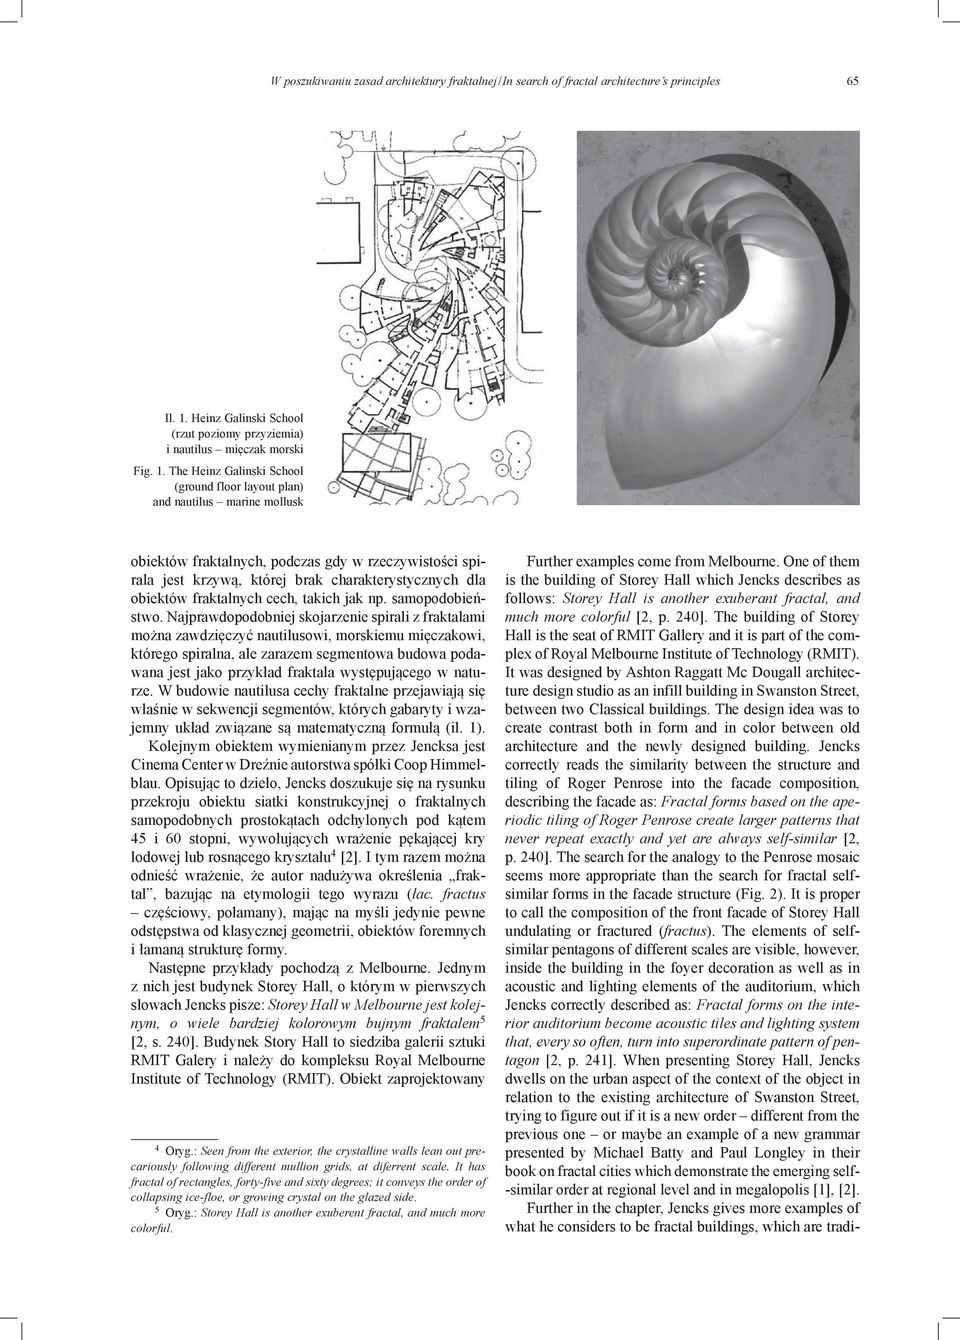 The Heinz Galinski School (ground floor layout plan) and nautilus marine mollusk obiektów fraktalnych, podczas gdy w rzeczywistości spirala jest krzywą, której brak charakterystycznych dla obiektów